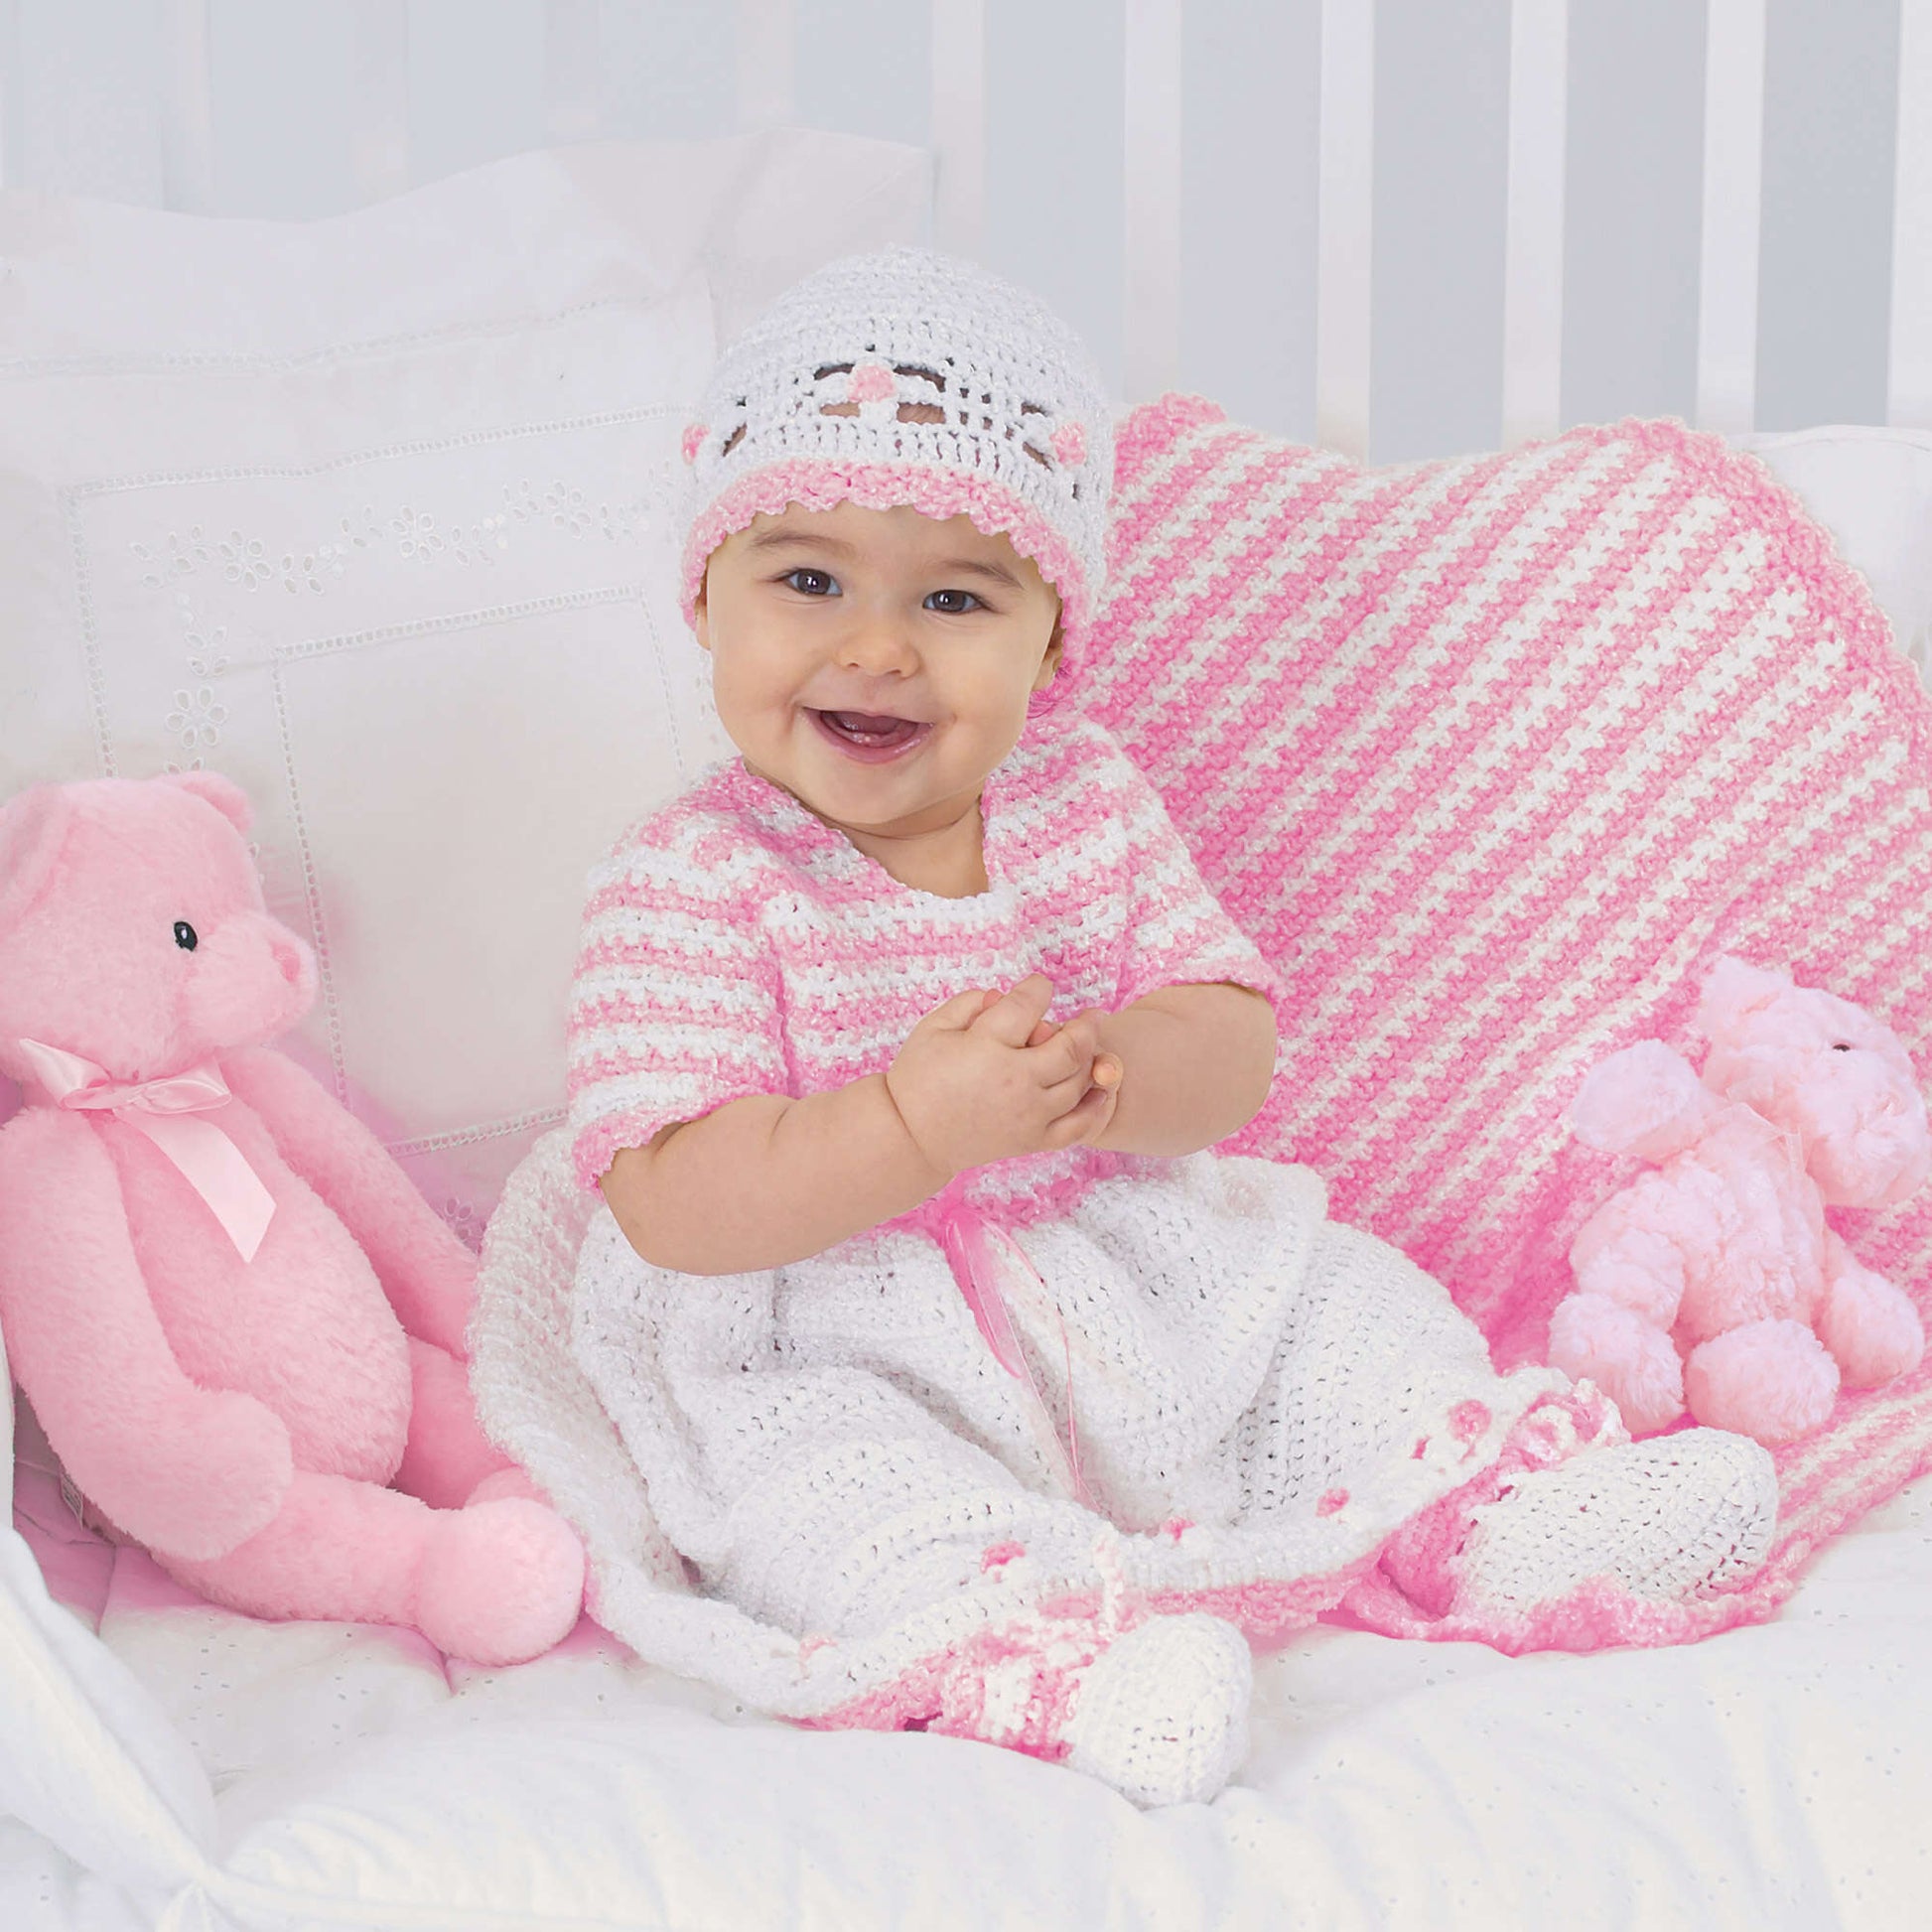 Free Bernat Sweet Baby Outfit Crochet Pattern